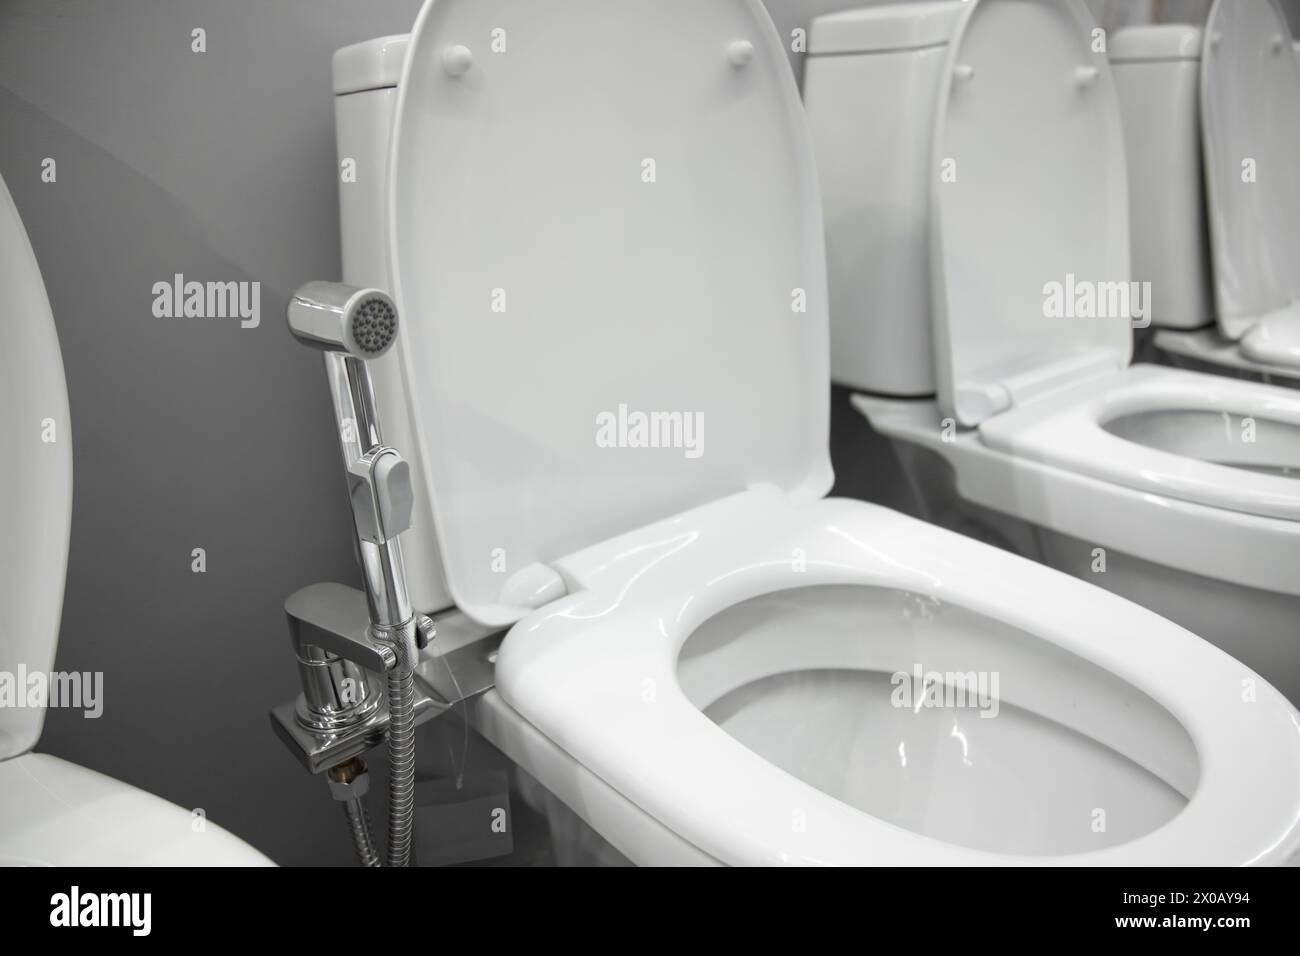 Toilettenschüssel mit Bidet-Duschkopf in einem Haushaltswarenladen Stockfoto